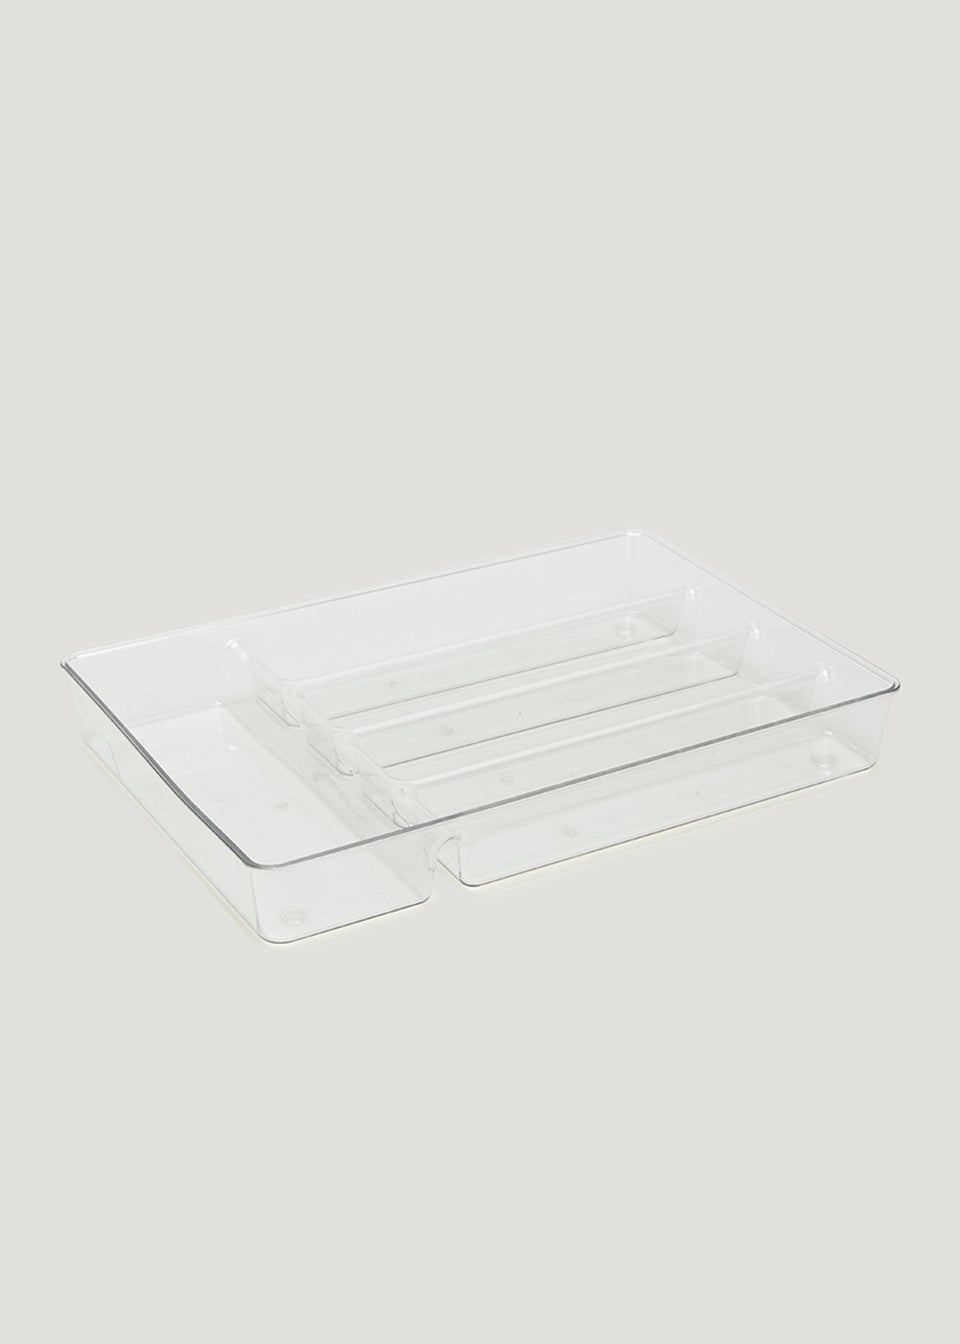 Clear Acrylic Cutlery Organiser Tray (35.5cm x 25cm x 5cm)